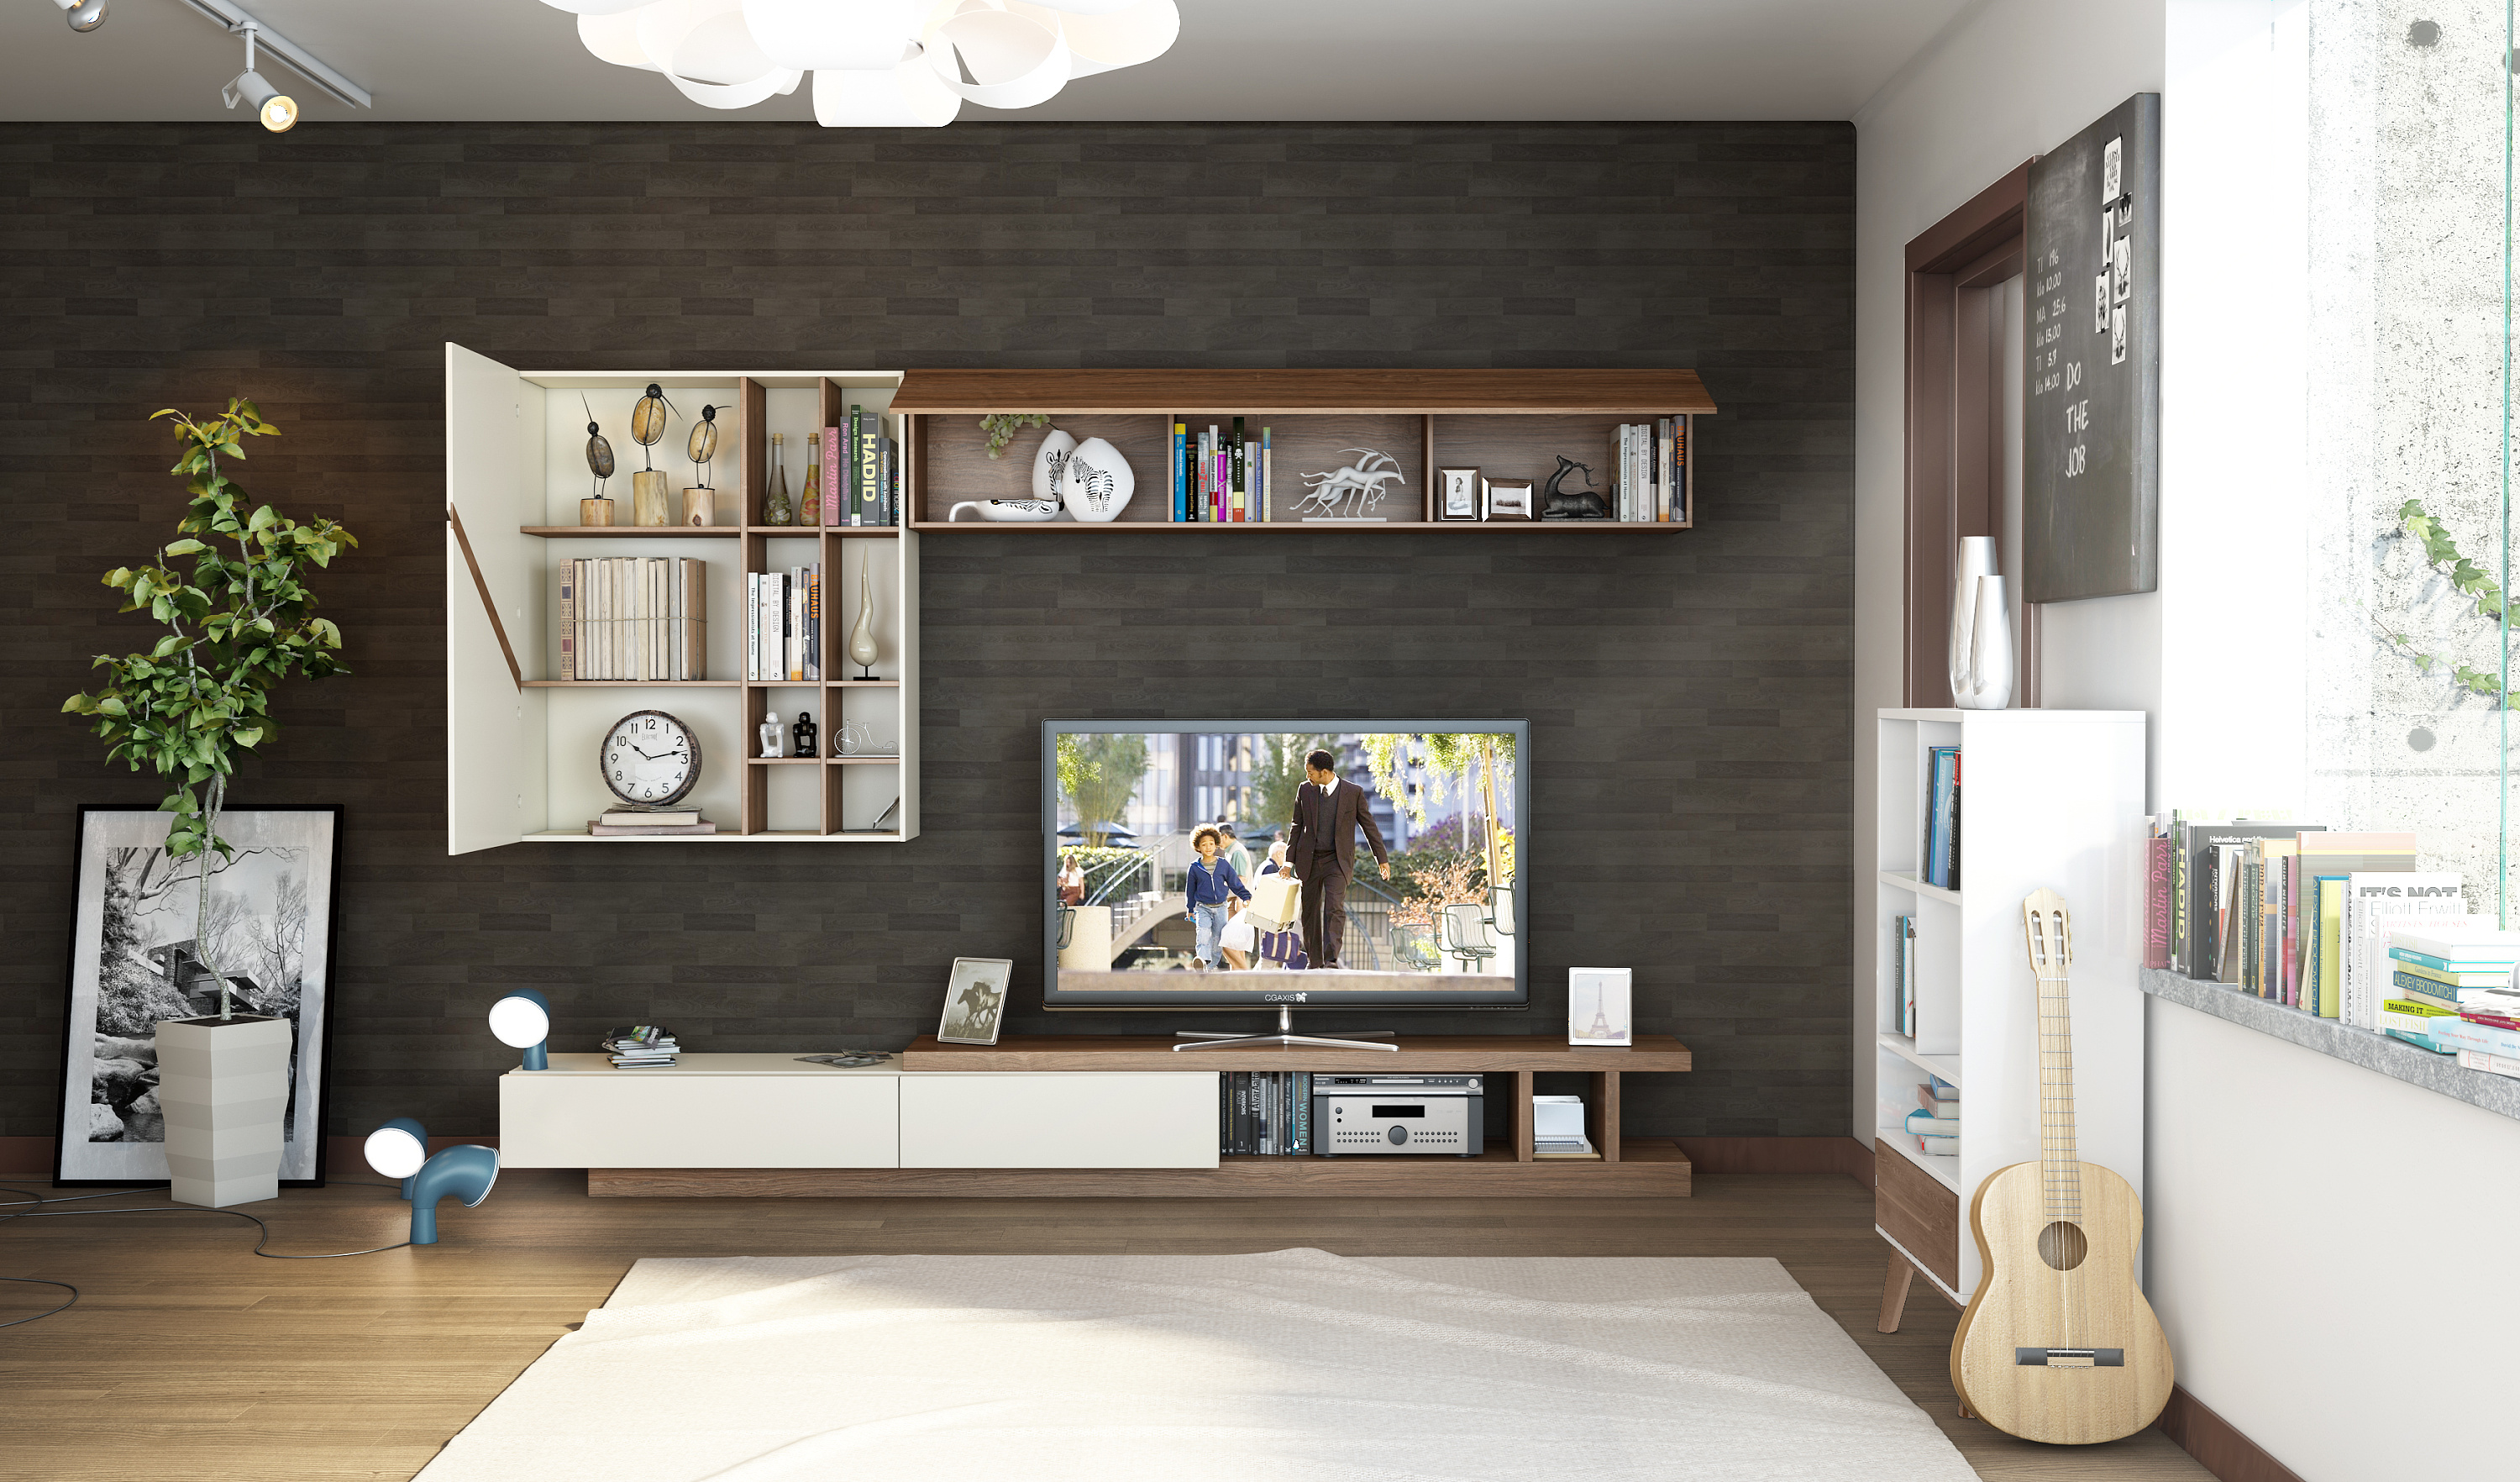 春意Ⅰ春季主题系列作品第一季之别墅客厅现代家具设计茶几电视柜沙发